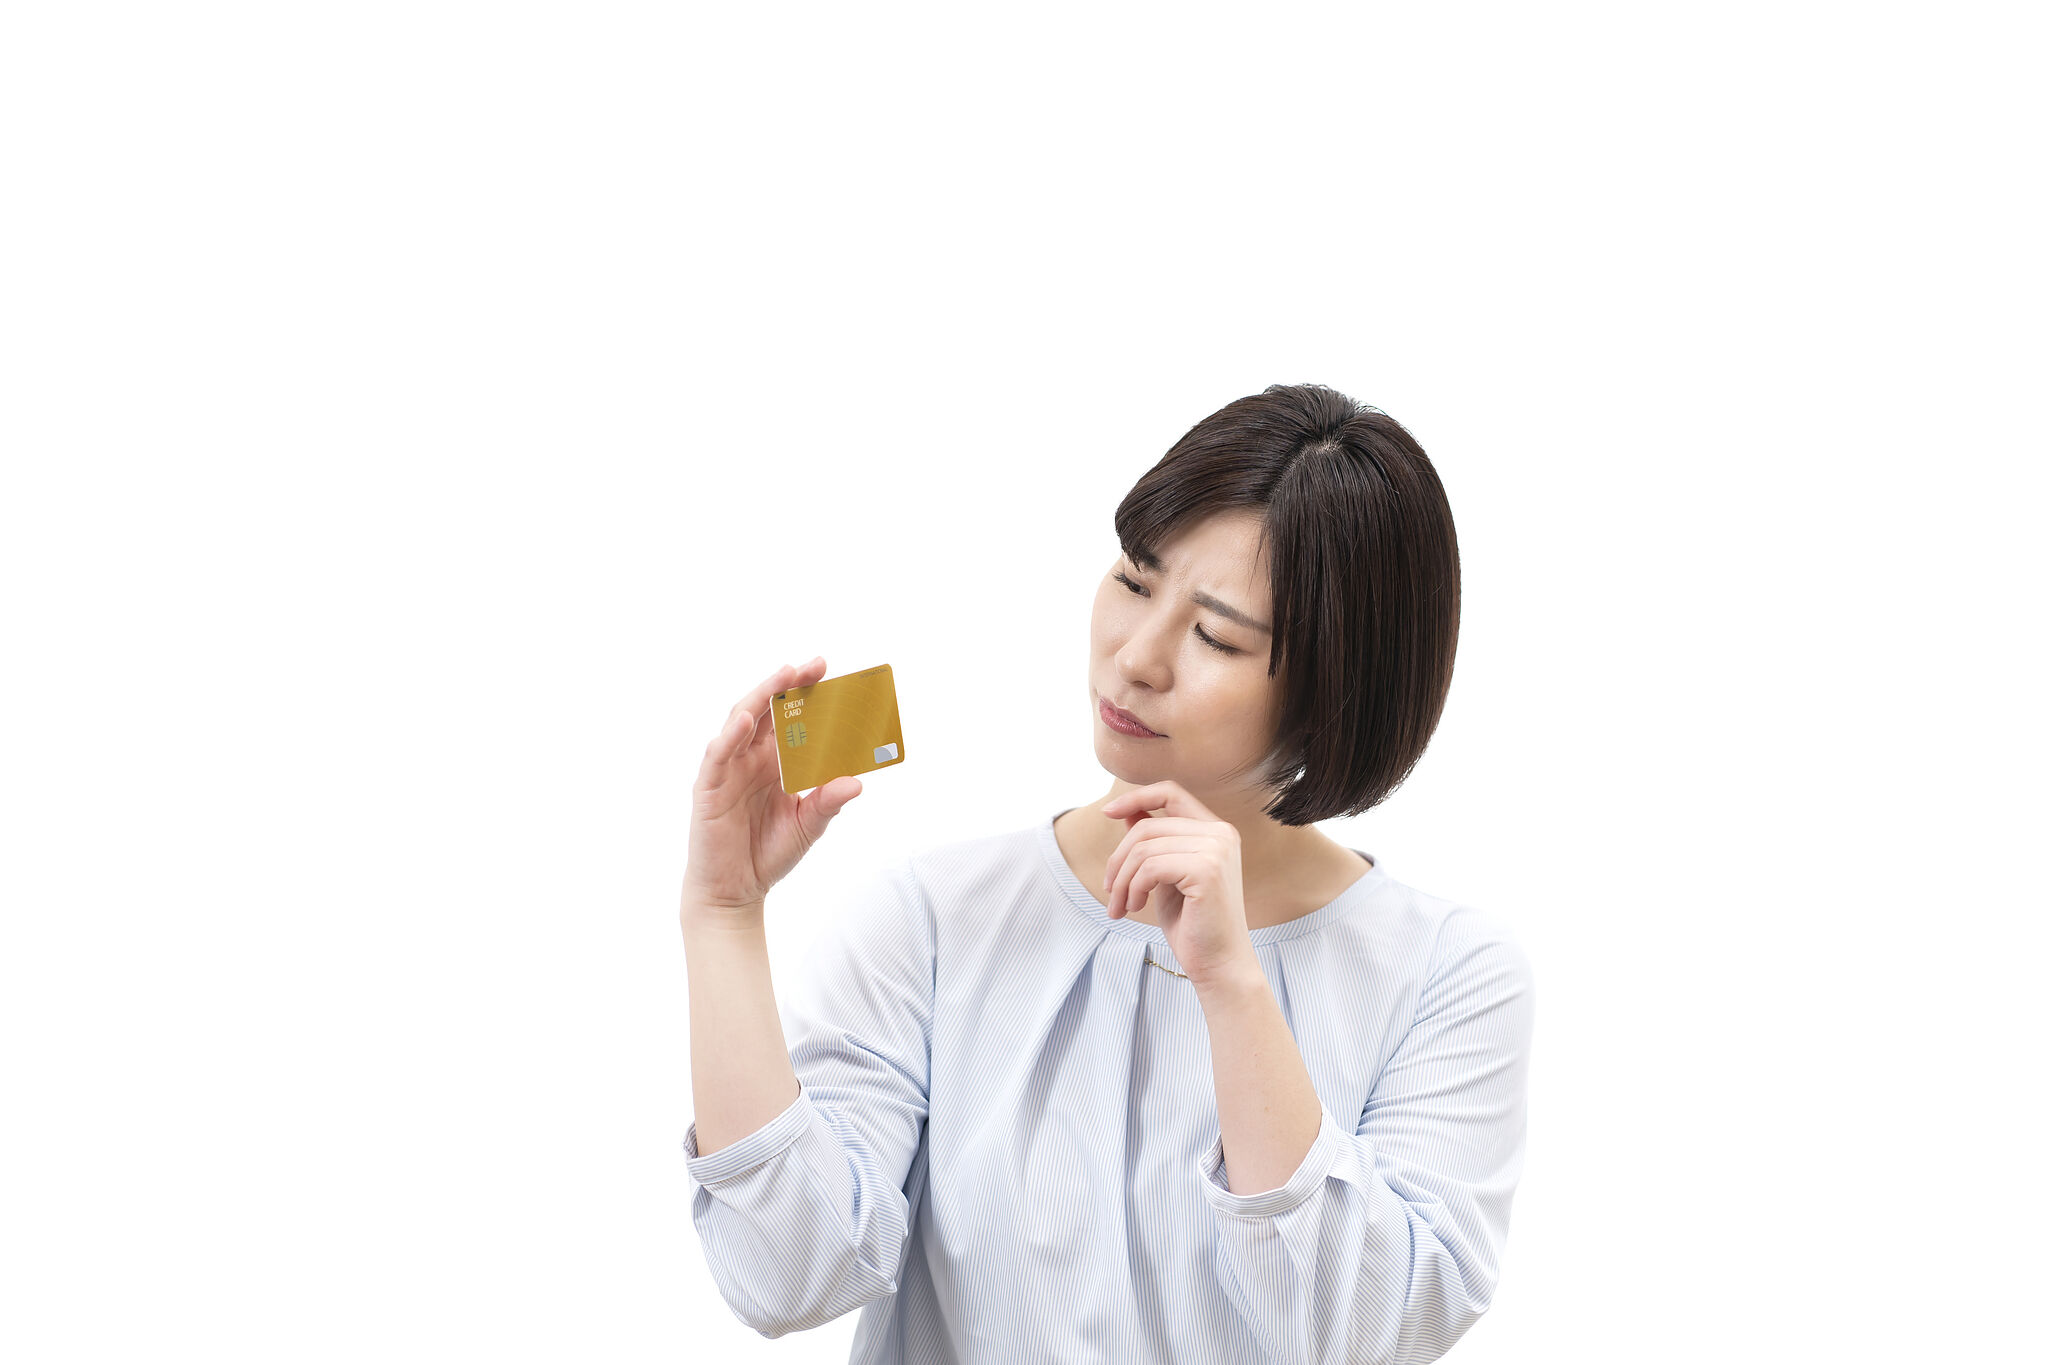 クレジットカードを眺める女性